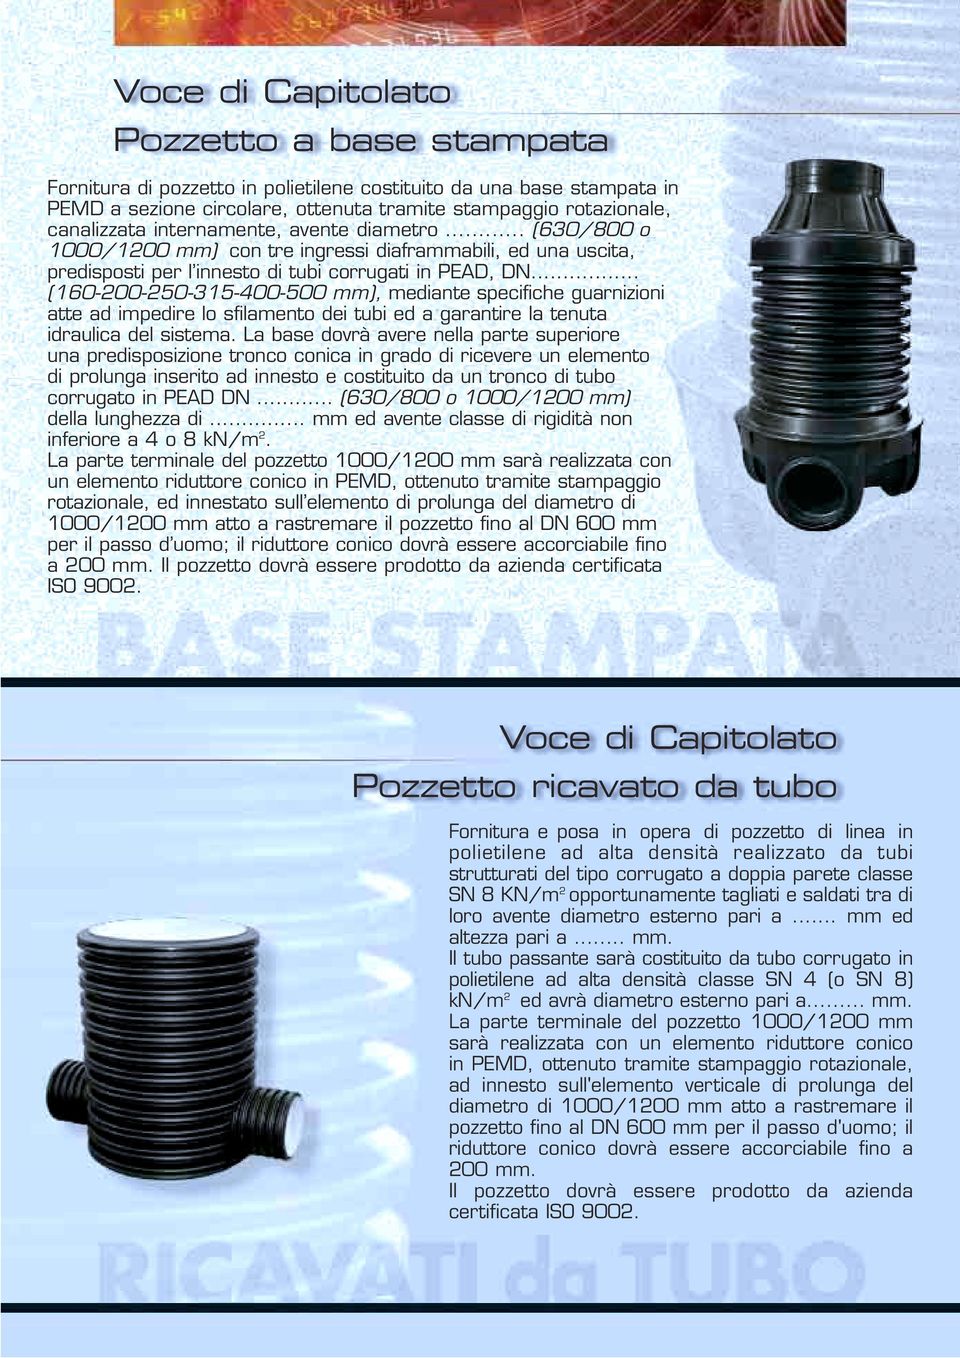 .. (160-200-250-315-400-500 mm), mediante specifiche guarnizioni atte ad impedire lo sfilamento dei tubi ed a garantire la tenuta idraulica del sistema.